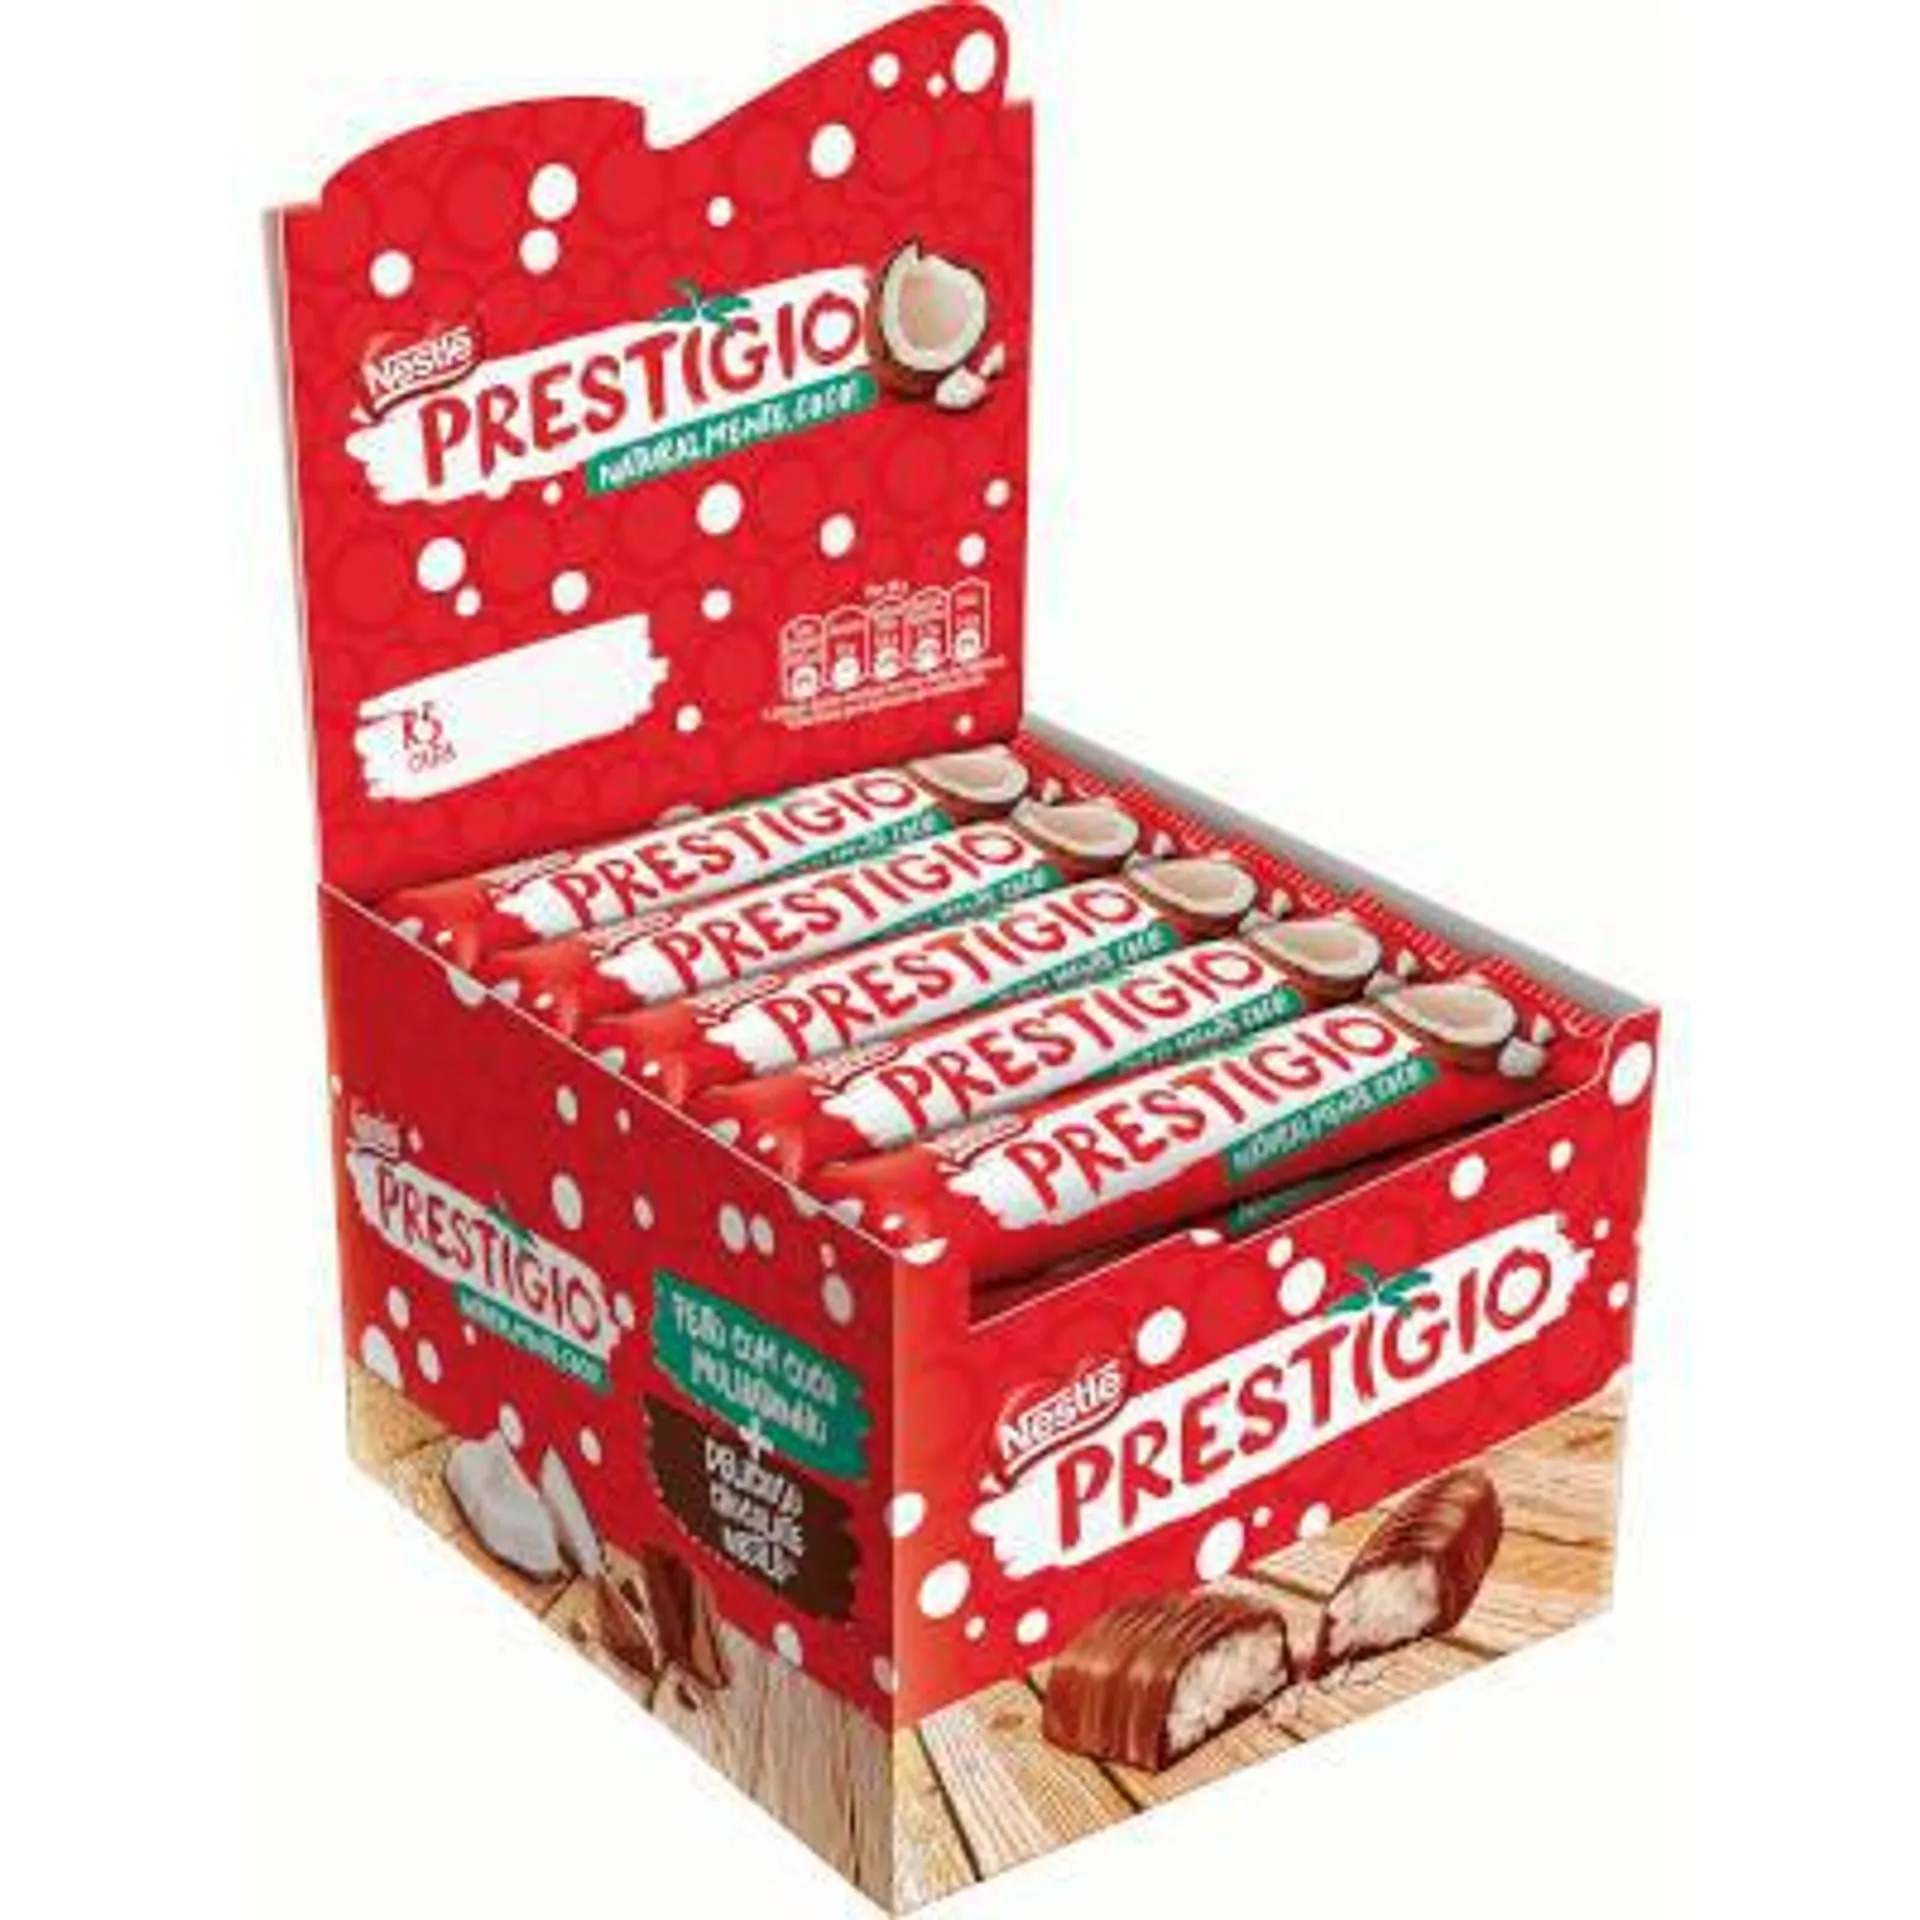 Chocolate Recheado com Coco caixa 30 unidades de 33g - Nestlé/Prestígio